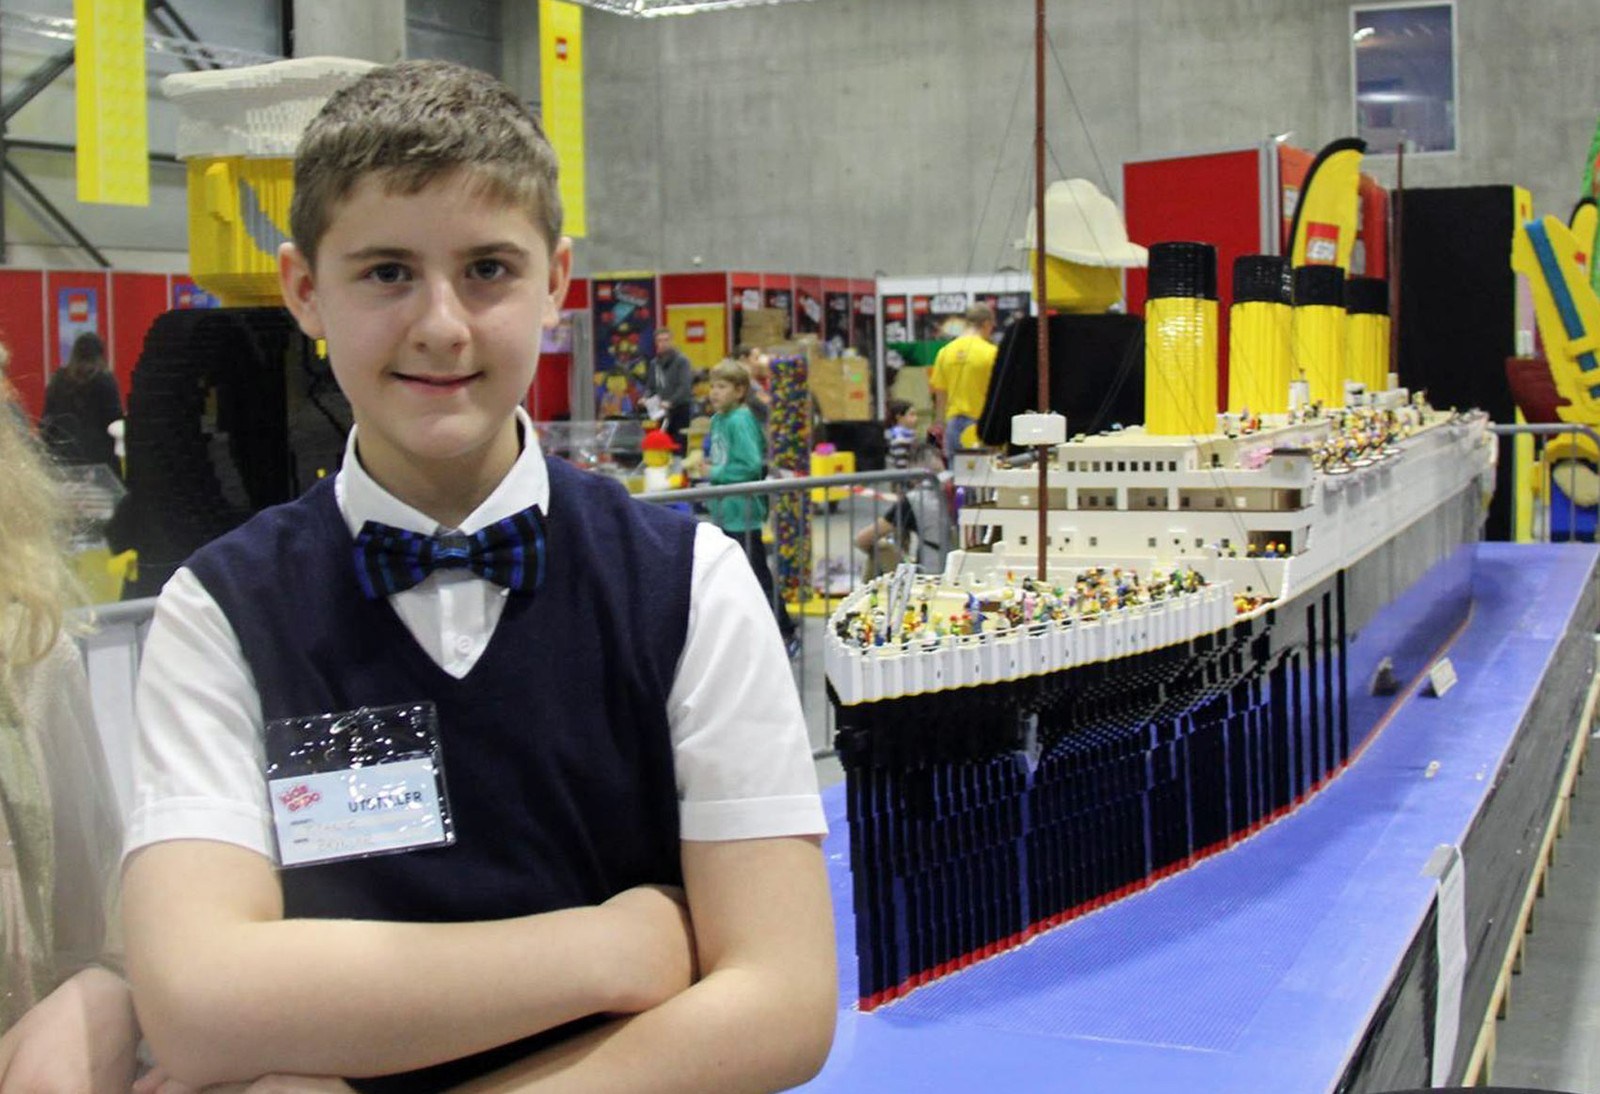 Menino com autismo constrói maior Titanic em Lego do mundo